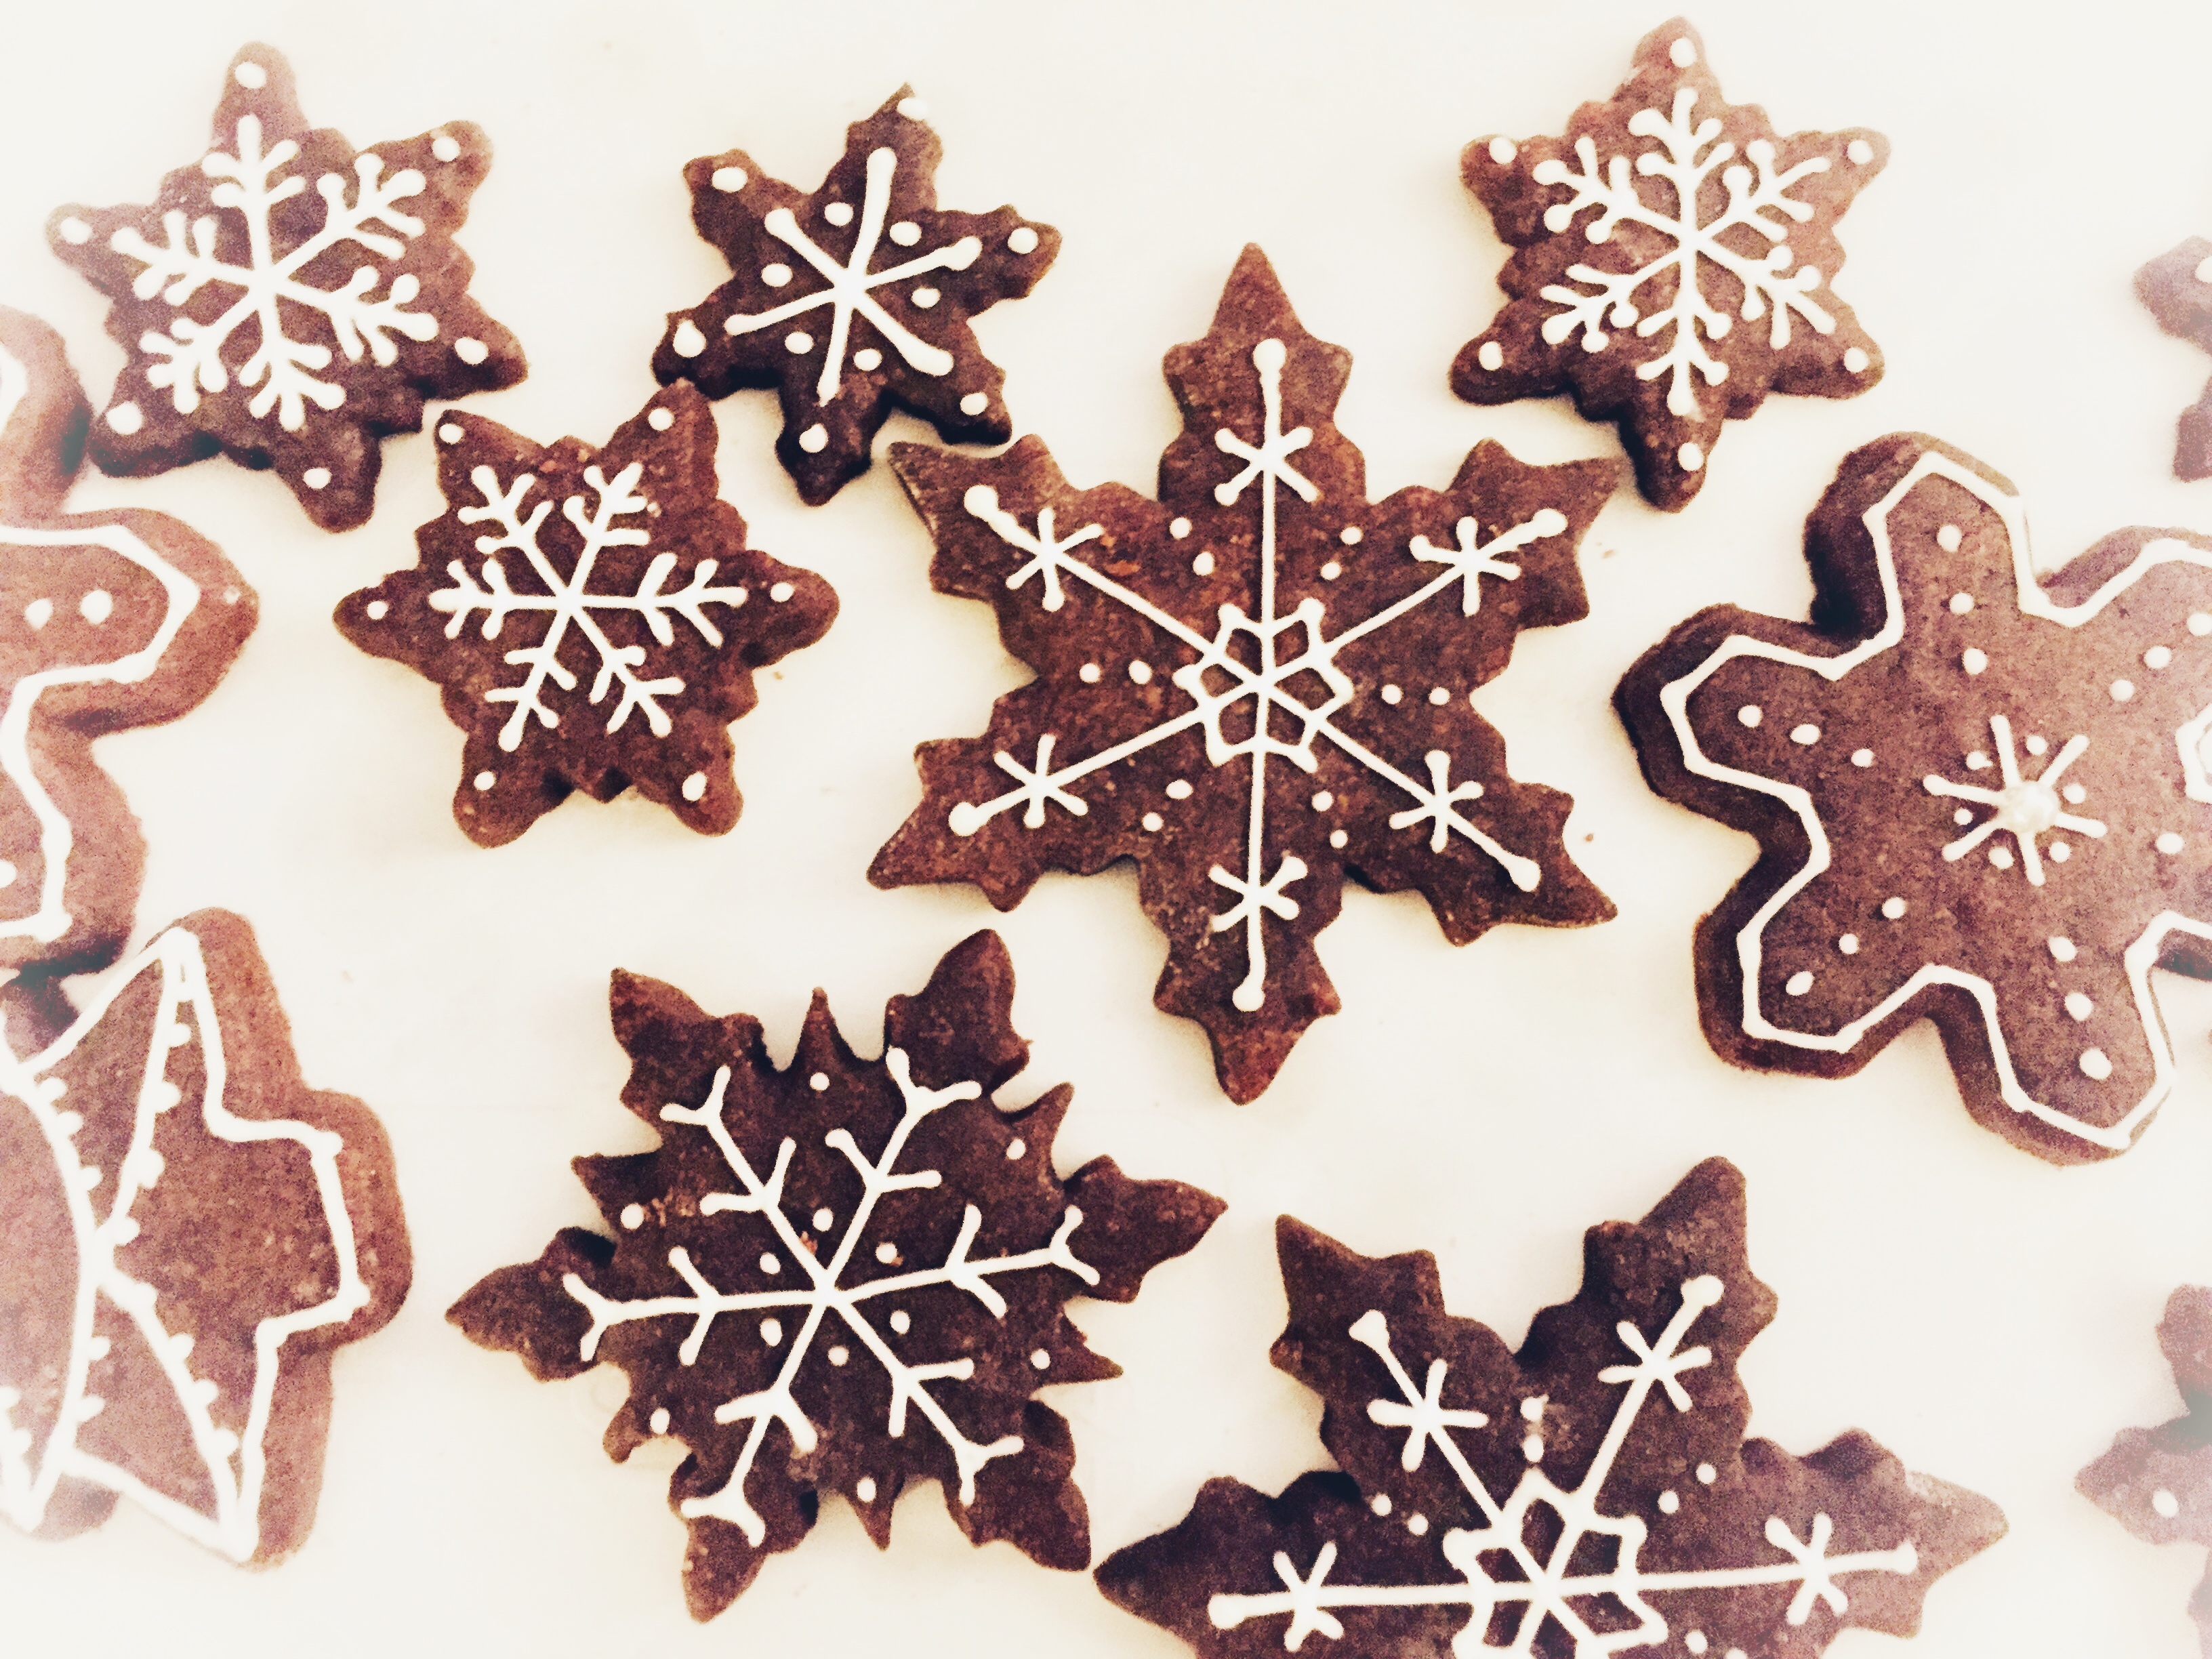 Glassa Per Decorare Biscotti Di Natale.Biscotti Di Natale Sablee Al Cacao Decorati Con Ghiaccia Reale Master Of Cakes